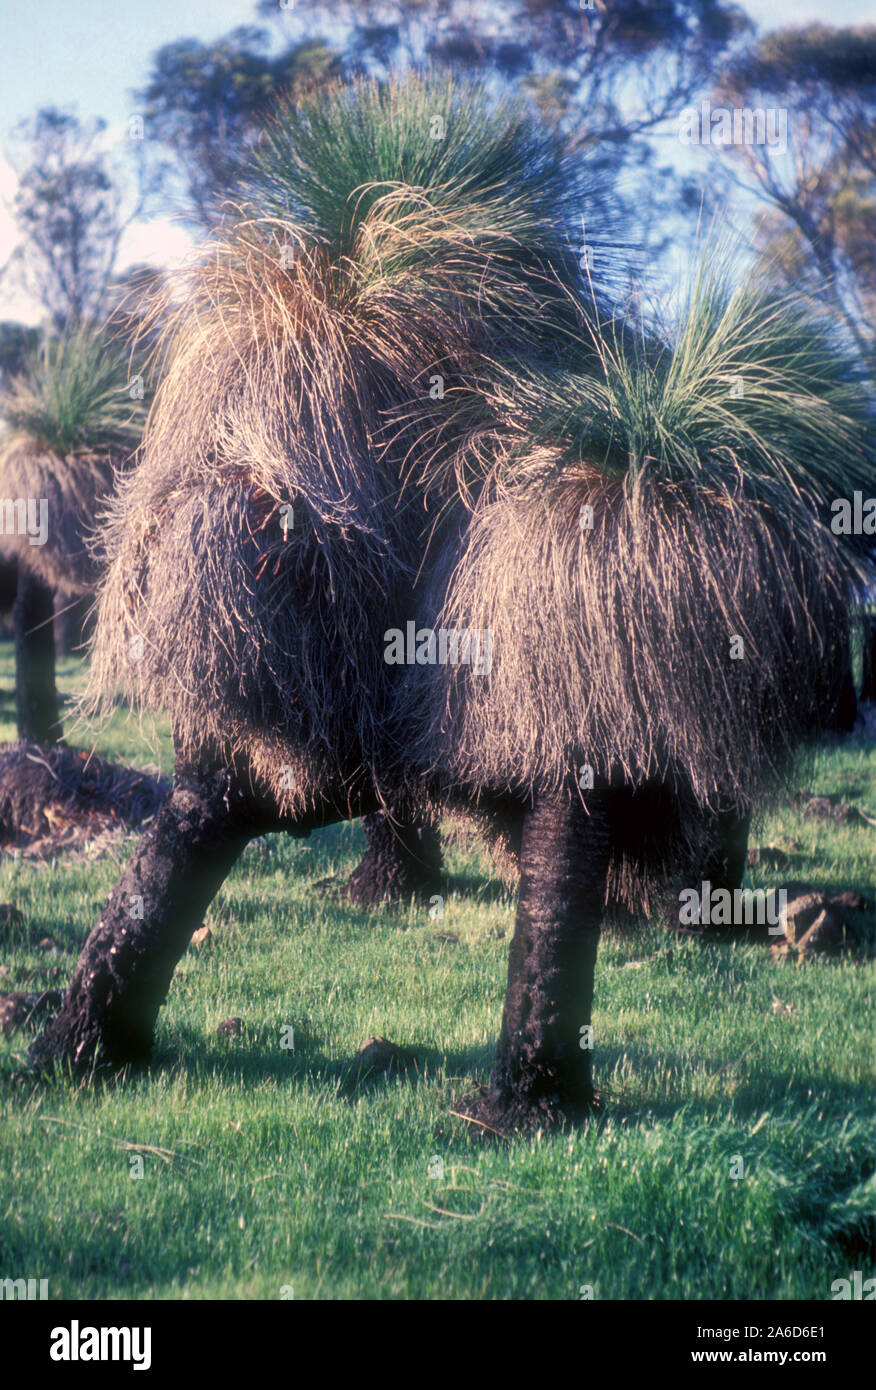 BLACKBOYS OR GRASSTREES (XANTHORRHOEA) AUSTRALIA. Stock Photo